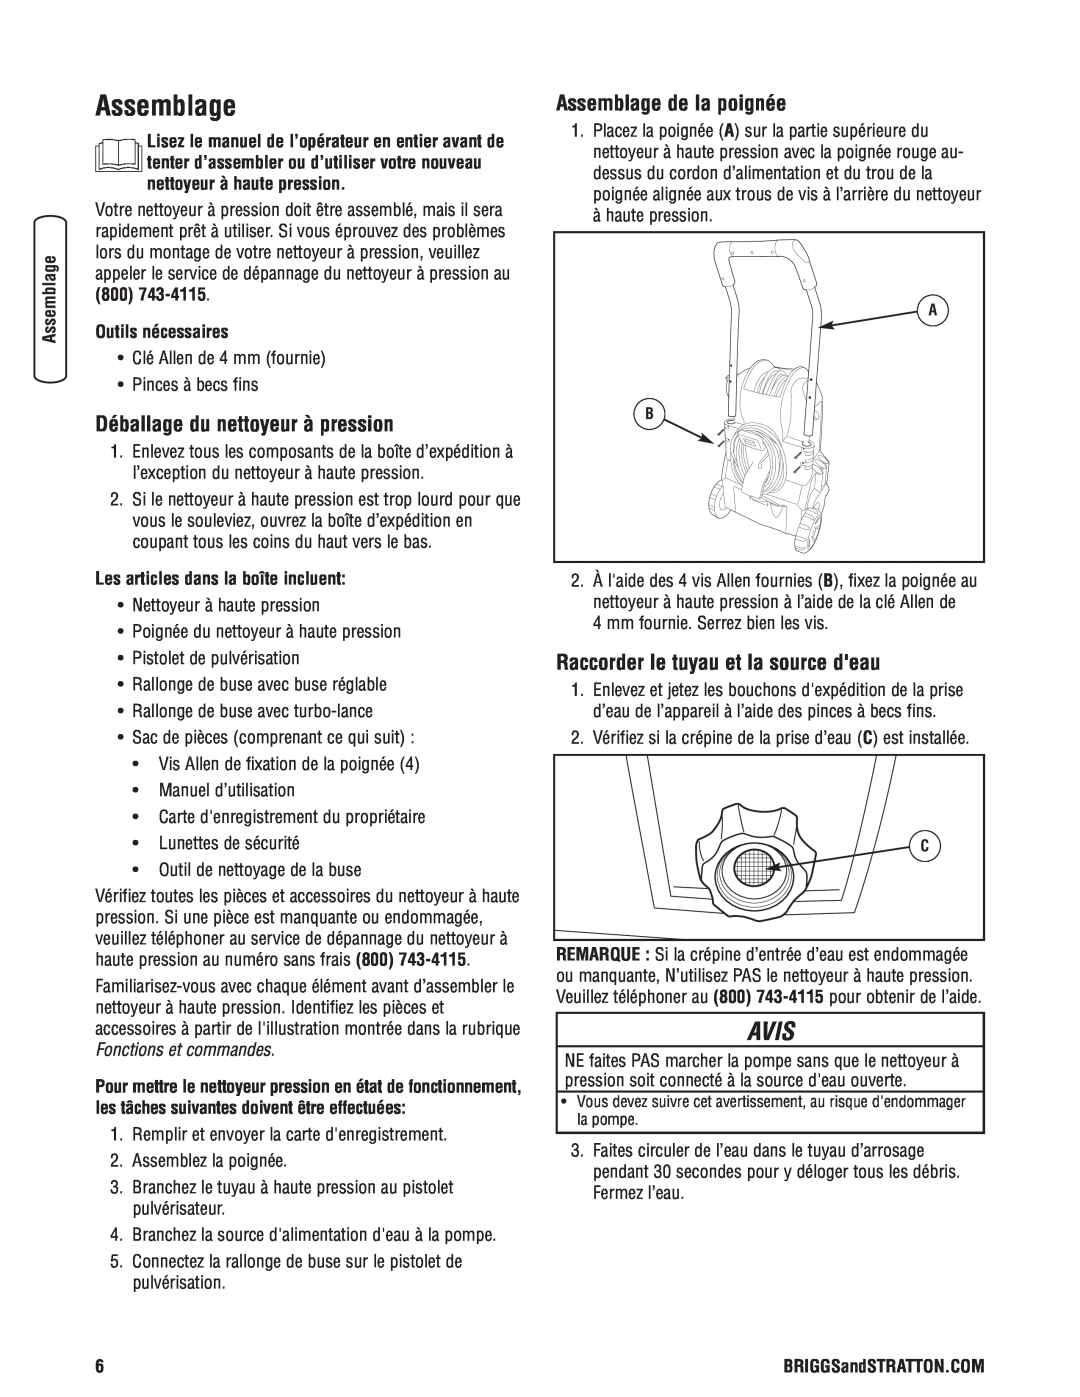 Briggs & Stratton Electric Pressure Washer manual Déballage du nettoyeur à pression, Assemblage de la poignée, Avis 